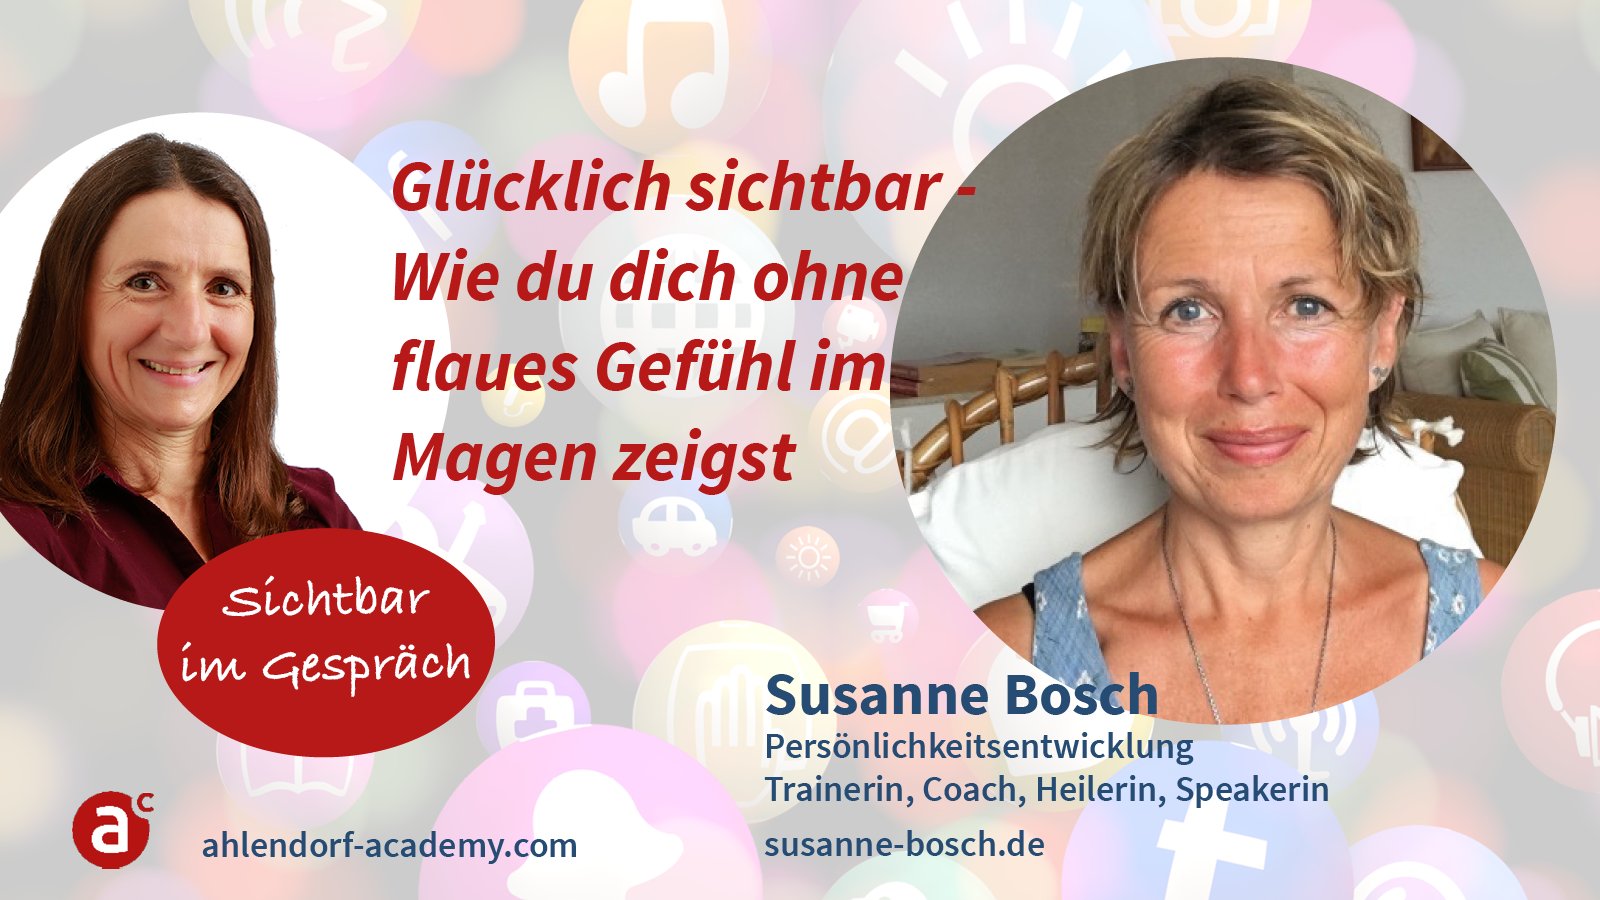 Sichtbar im Gespräch mit Susanne Bosch: Glücklich sichtbar - Wie dich ohne flaues Gefühl im Magen zeigst